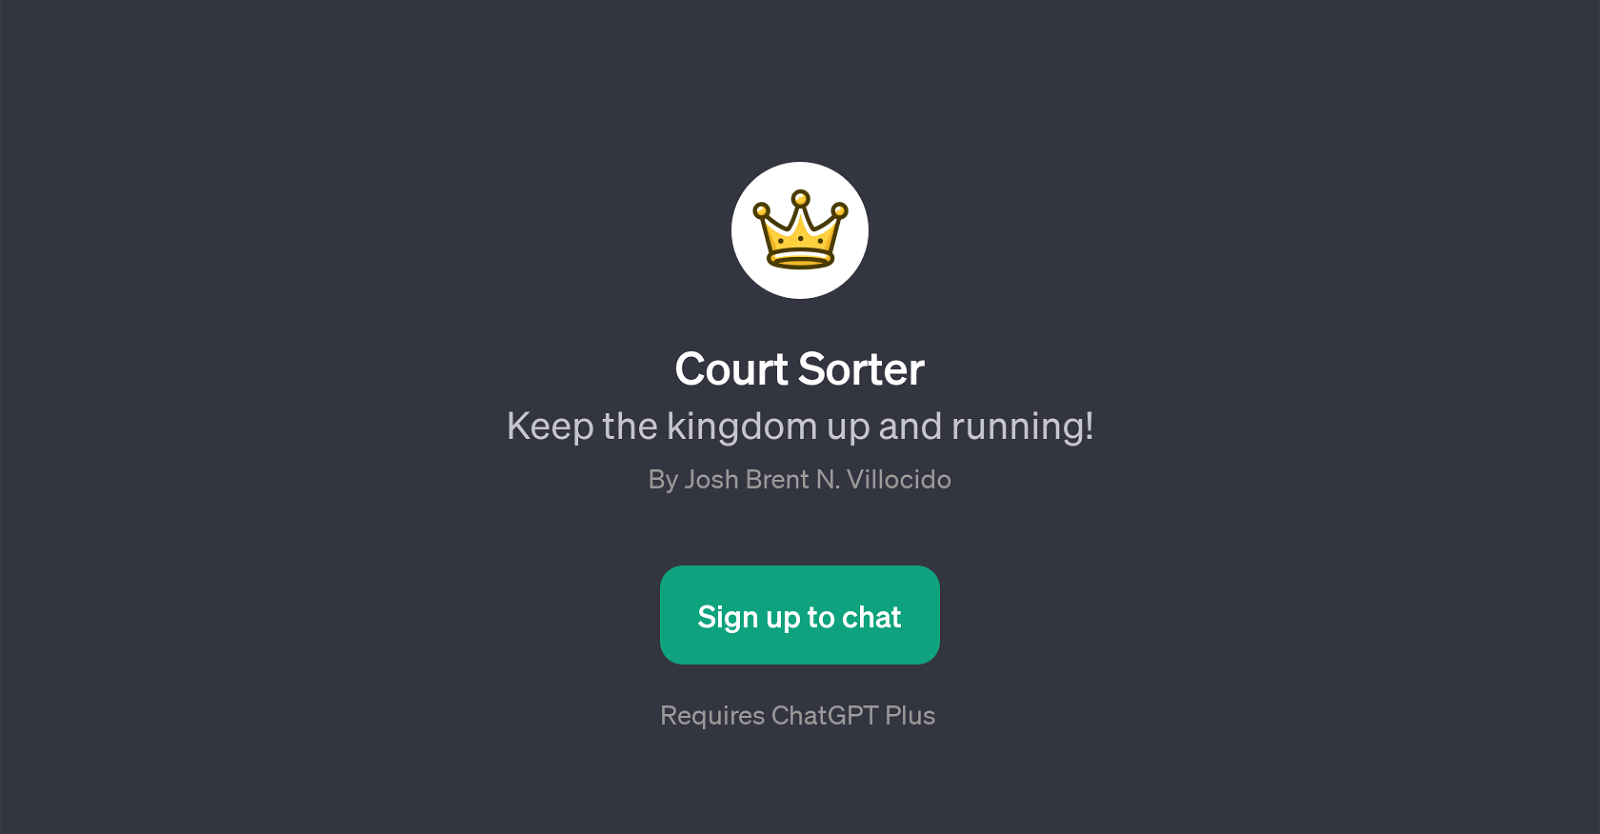 Court Sorter website